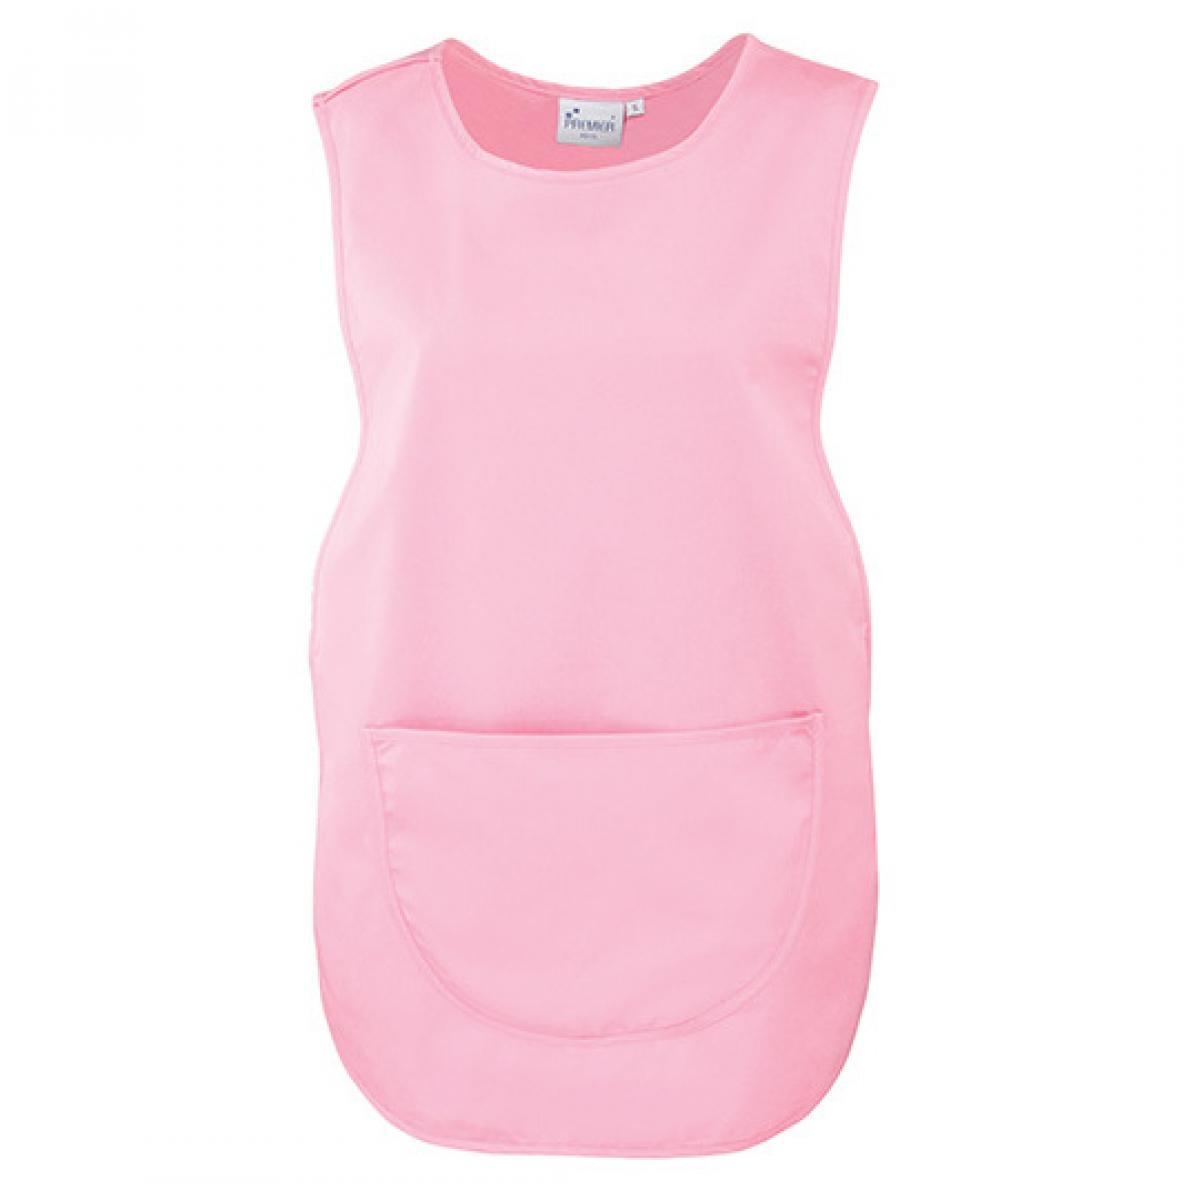 Hersteller: Premier Workwear Herstellernummer: PR171 Artikelbezeichnung: Women`s Pocket Tabard - Waschbar bis 60 °C Farbe: Pink (ca. Pantone 1895)